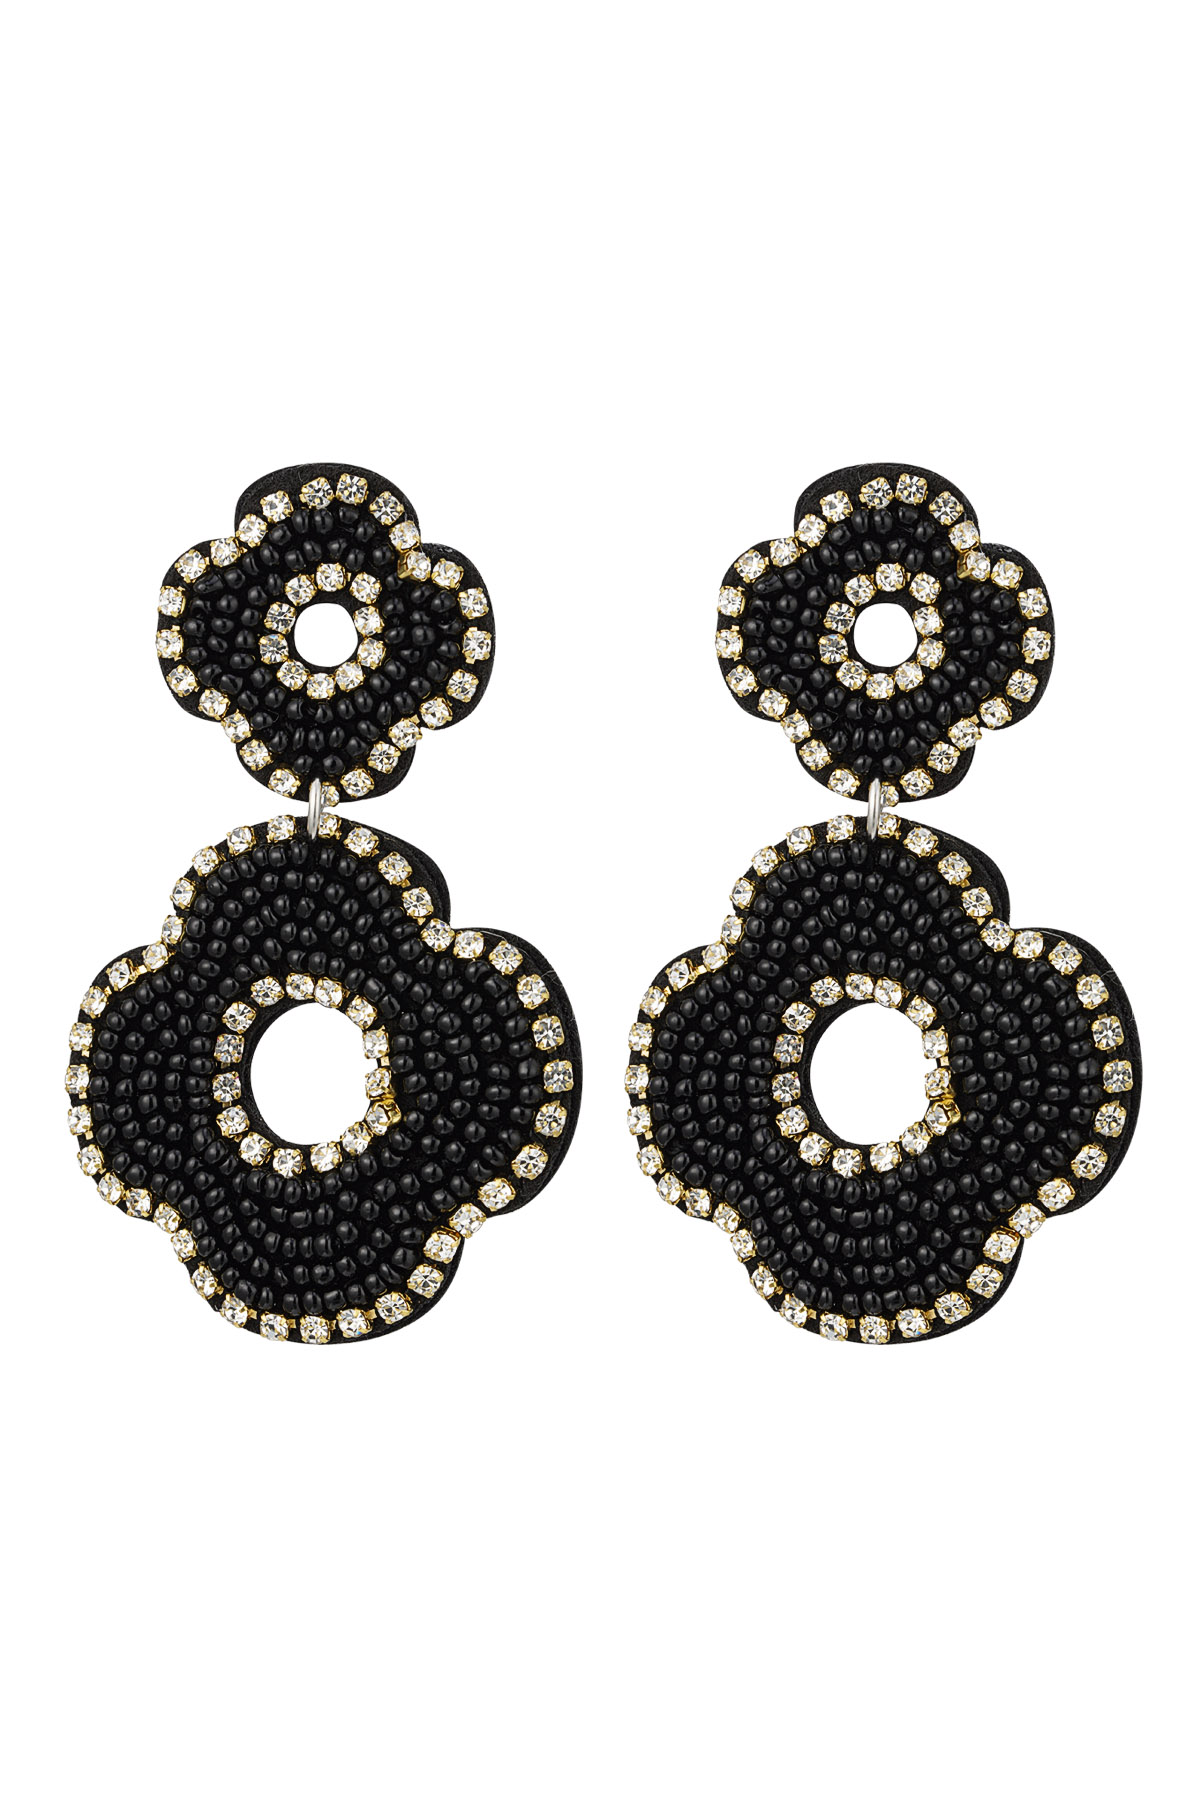 Ohrringe Perlen doppelte Blume - schwarz Glas